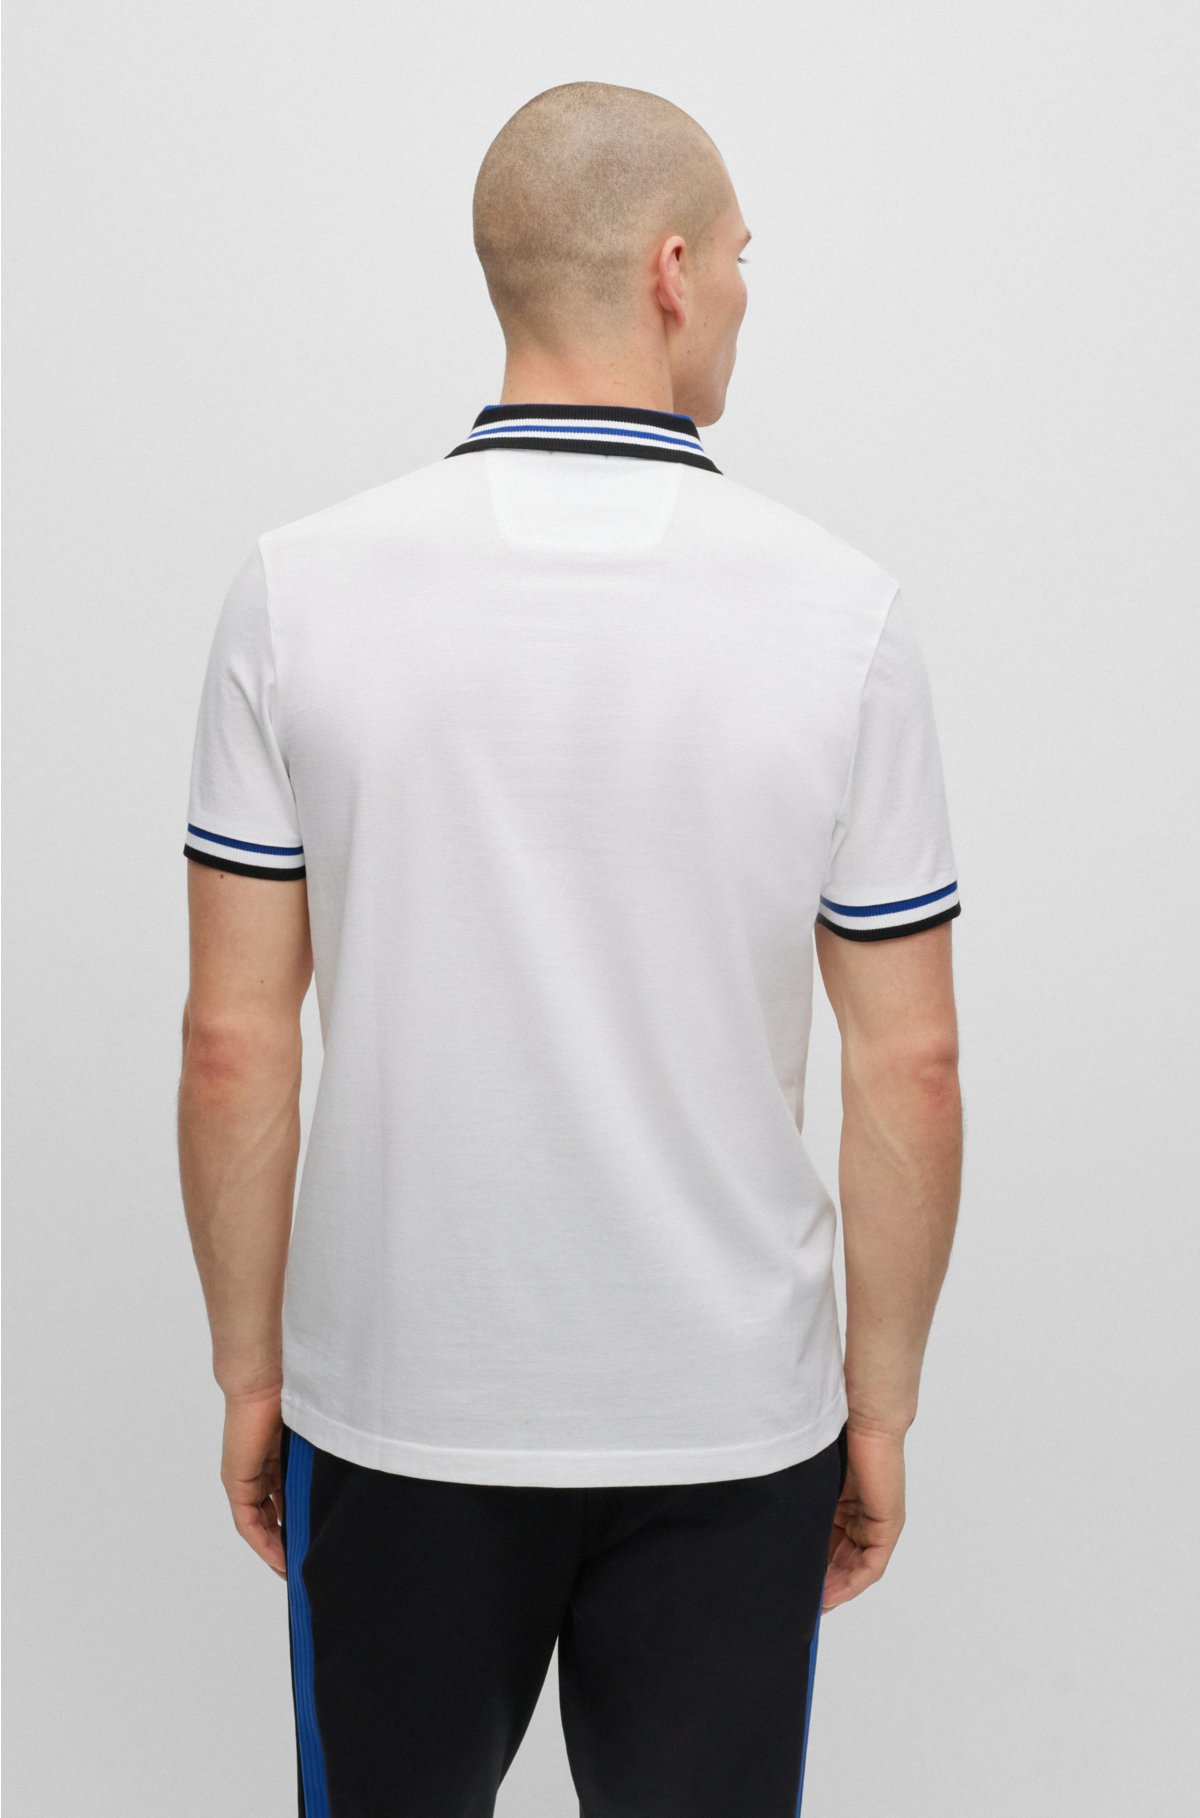 Camisas Polo Para Hombre  Compra Online Camisas Polo Para Hombre en Punto  Blanco®